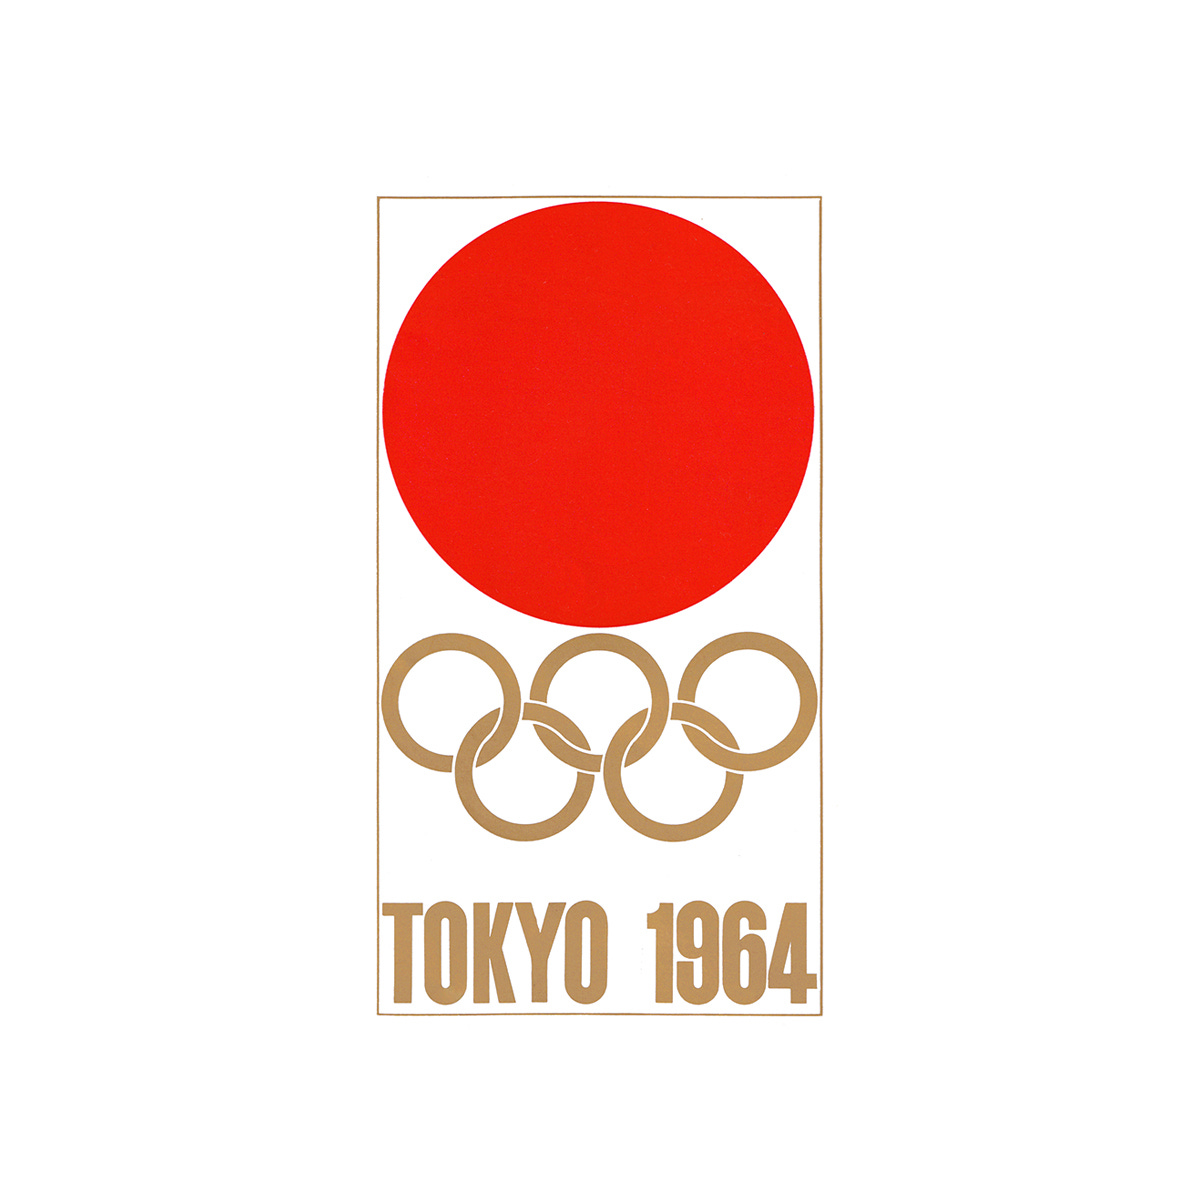 Tokyo 1964 logo Yusaku Kamekura